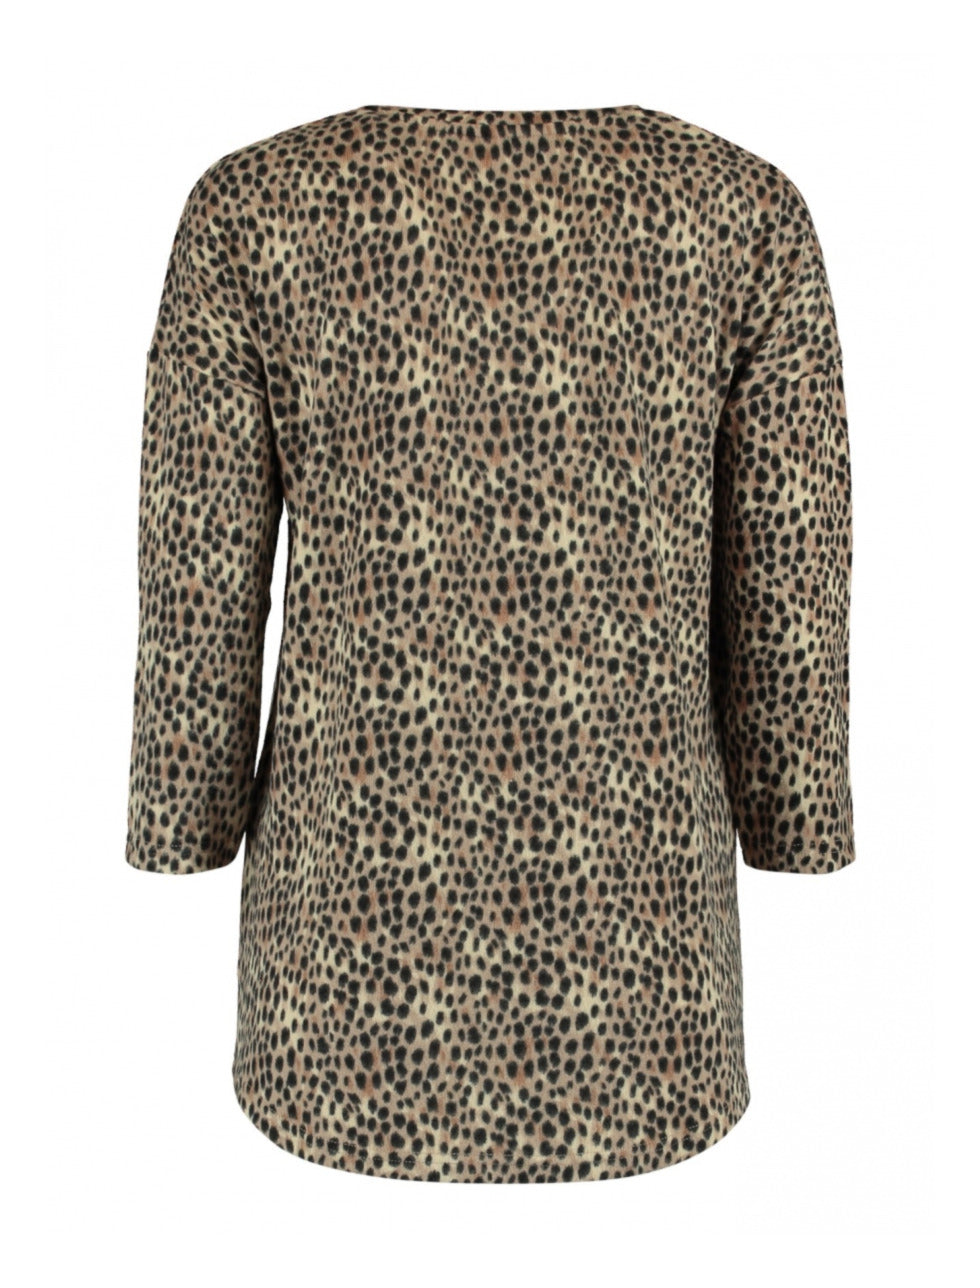 Malia Beige Leopard Print Knit Top